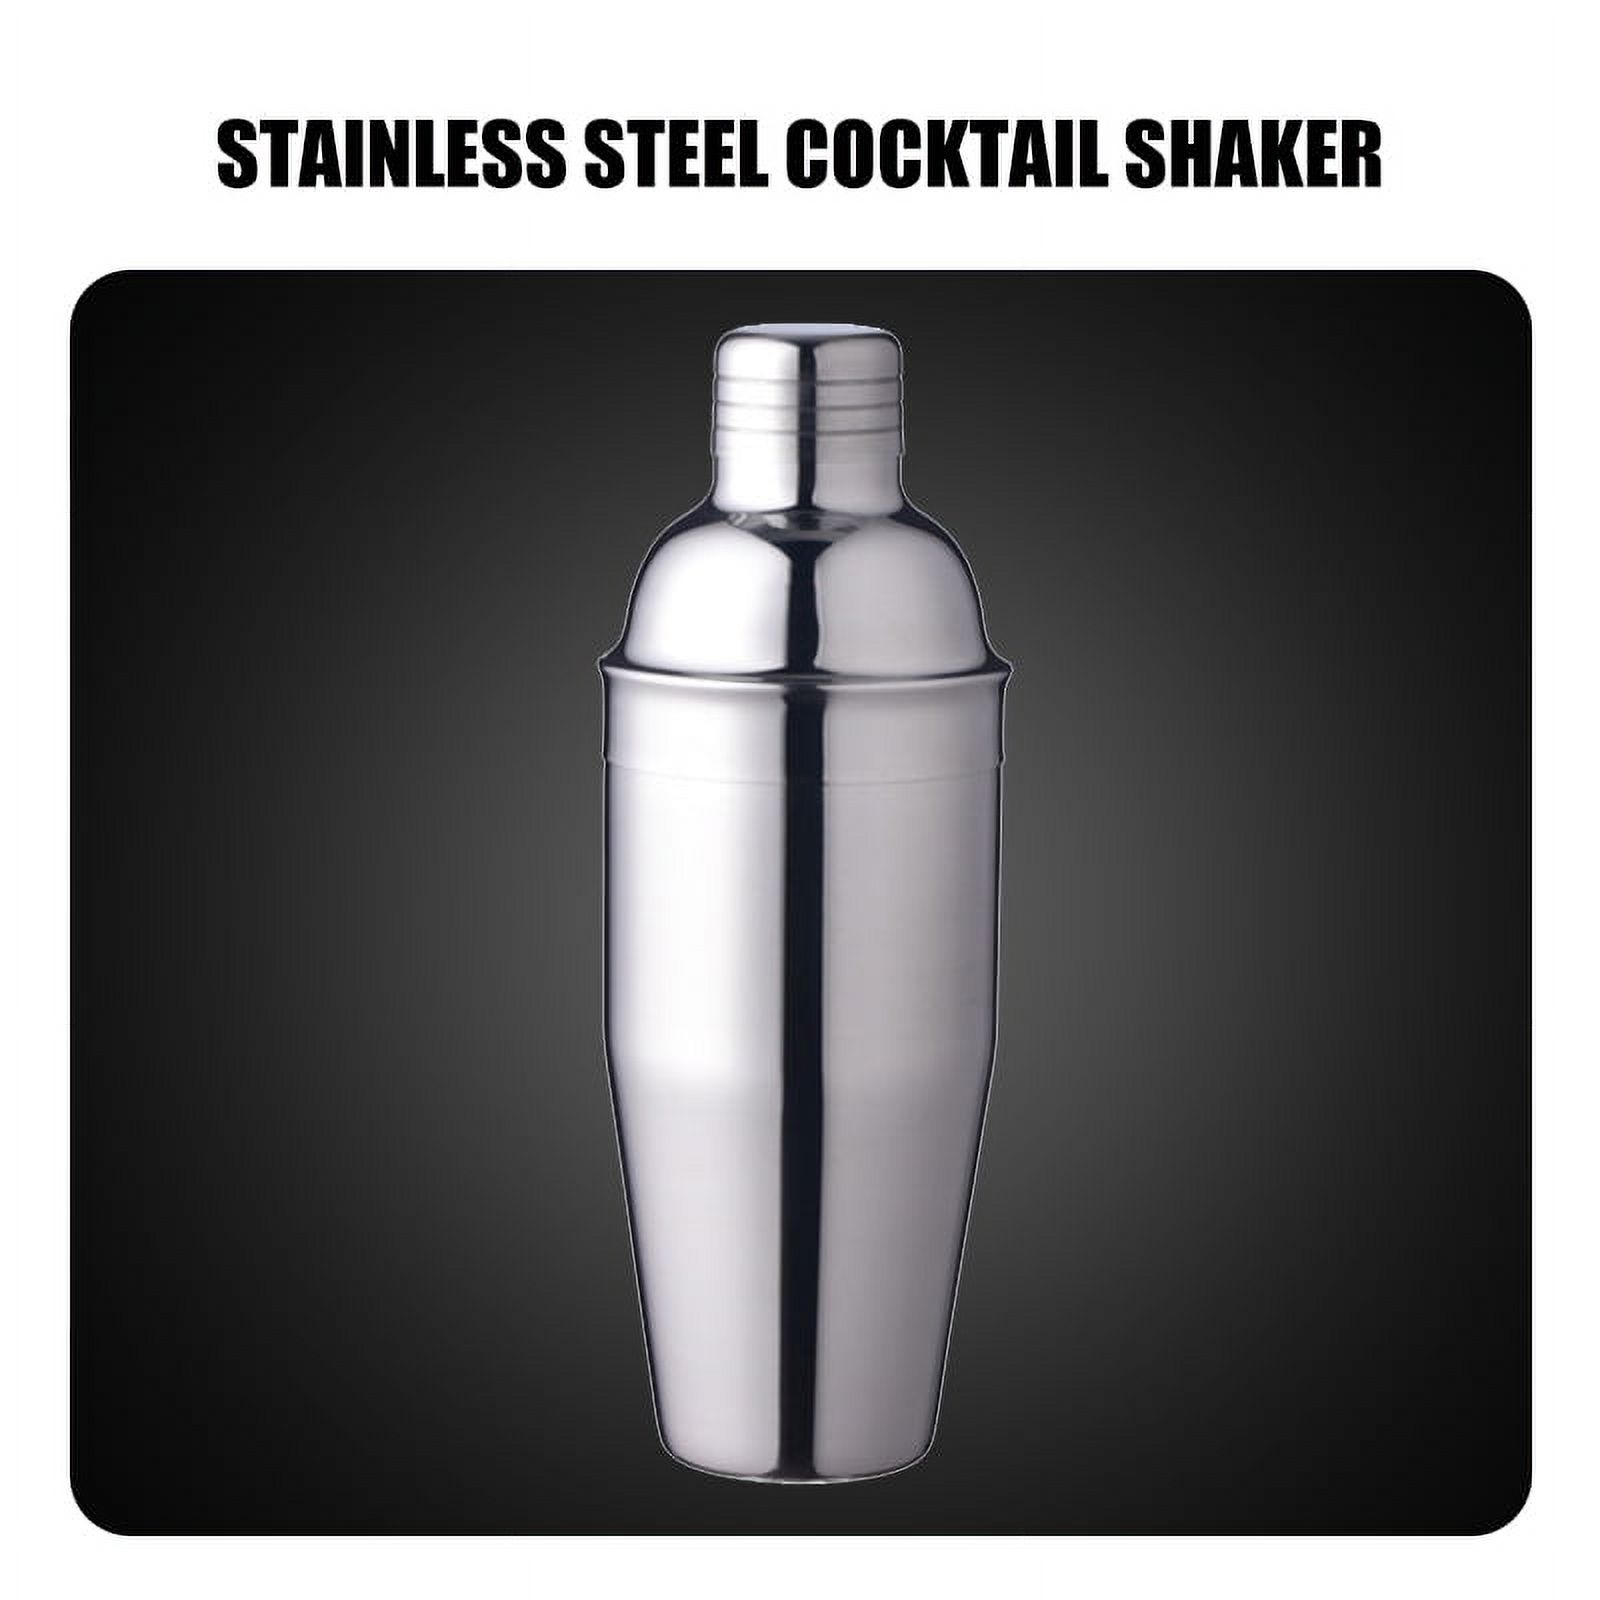 VONTER Shaker,Bartender Kit,Cocktail Shaker Set Drink Bar, Professional Stainless Steel Shaker Bar,Cocktail Shaker Stainless Steel Martini Shaker,(18/8 grade stainless steel,750ml) - image 2 of 8